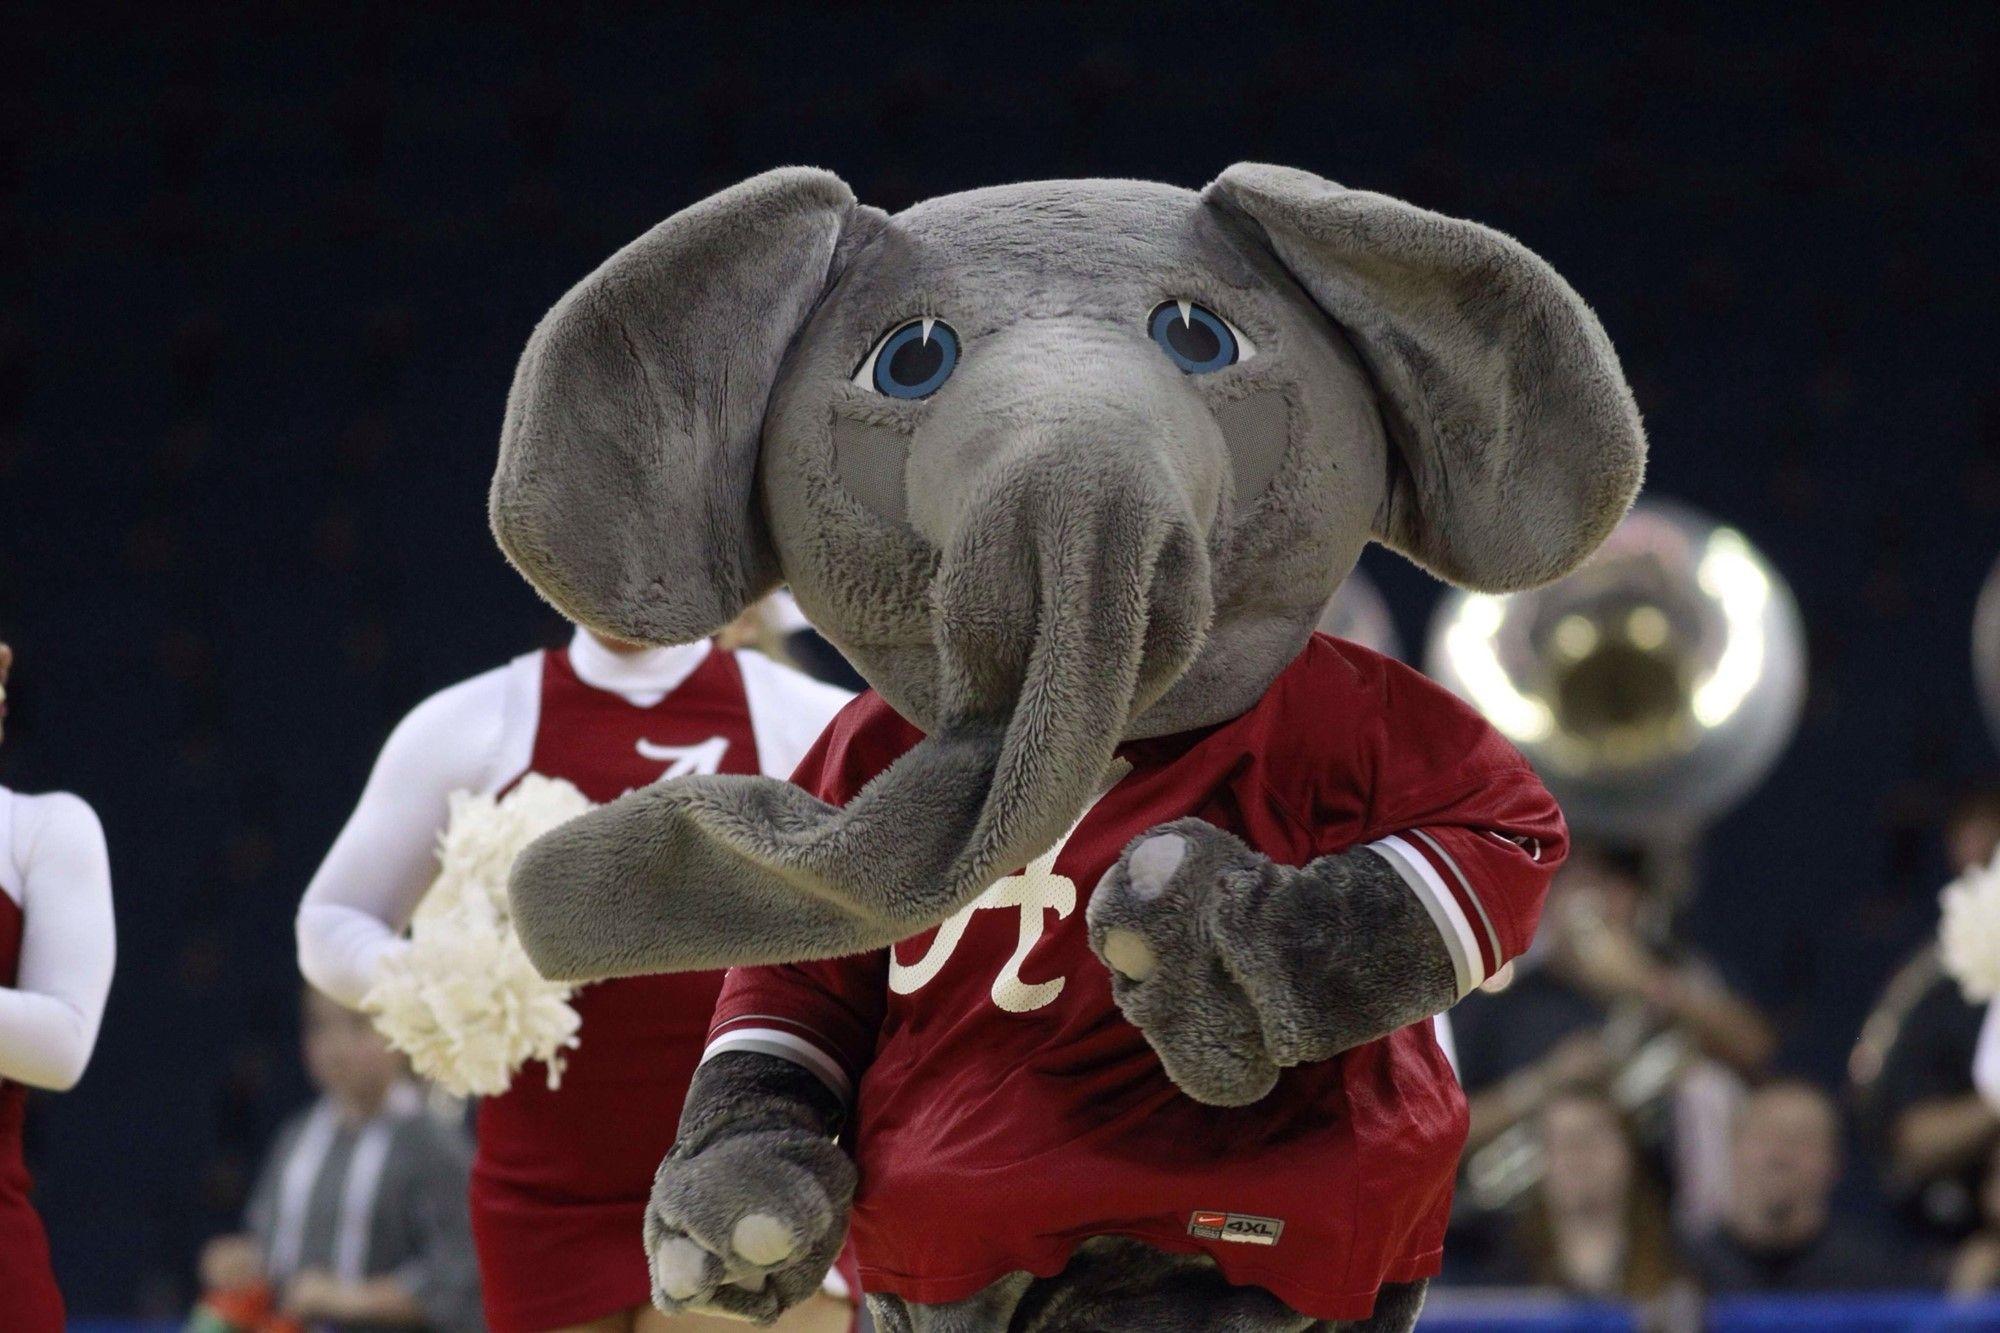 Bama Elephant Logo - The Elephant Story - University of Alabama Athletics